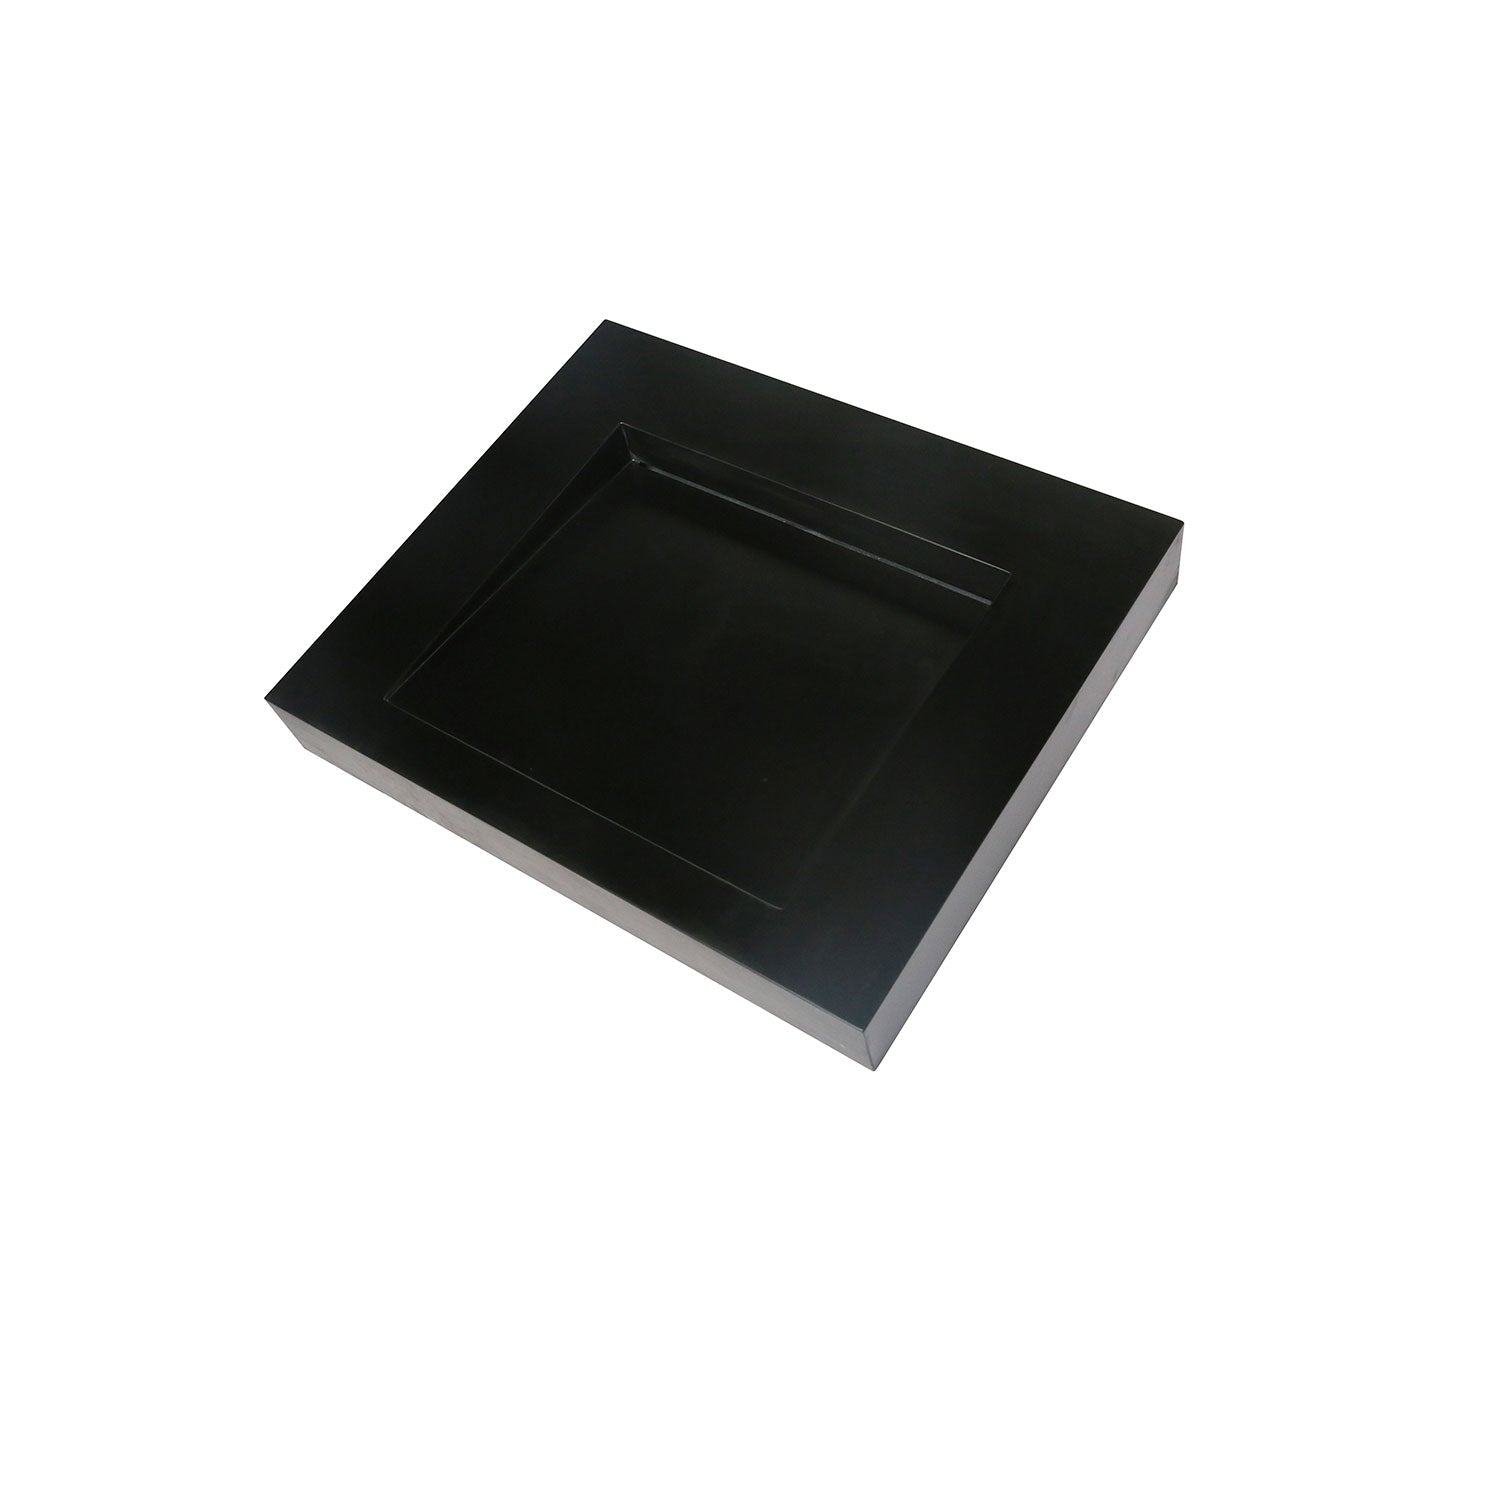 DAX Lavabo de baño rectangular de superficie sólida con montaje superior de un tazón, 23-1/4 x 19-5/16 x 3-1/8 pulgadas (DAX-AB-1330)